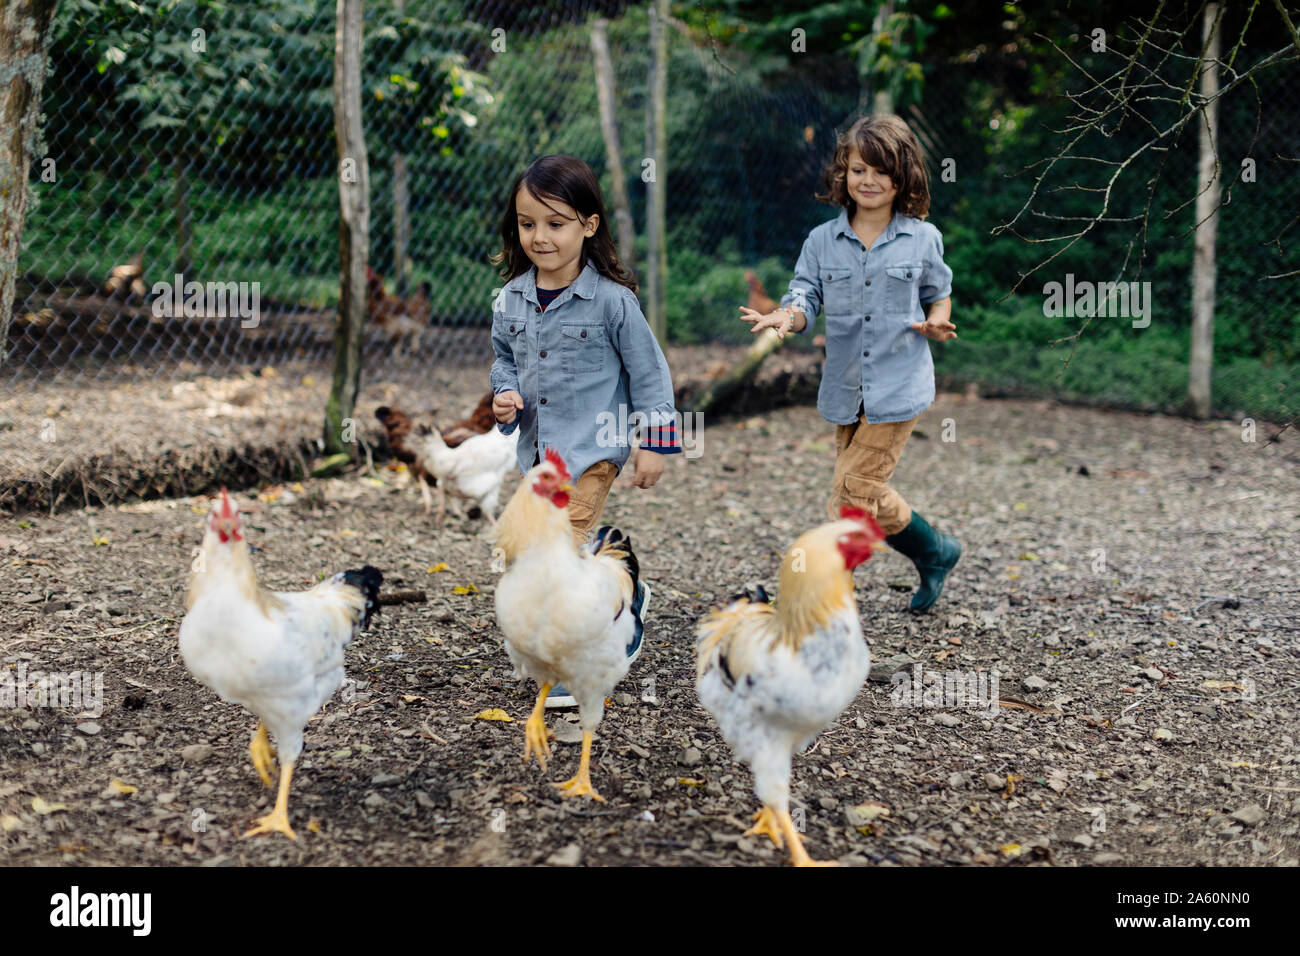 Deux enfants courir après les poulets dans une ferme biologique Banque D'Images